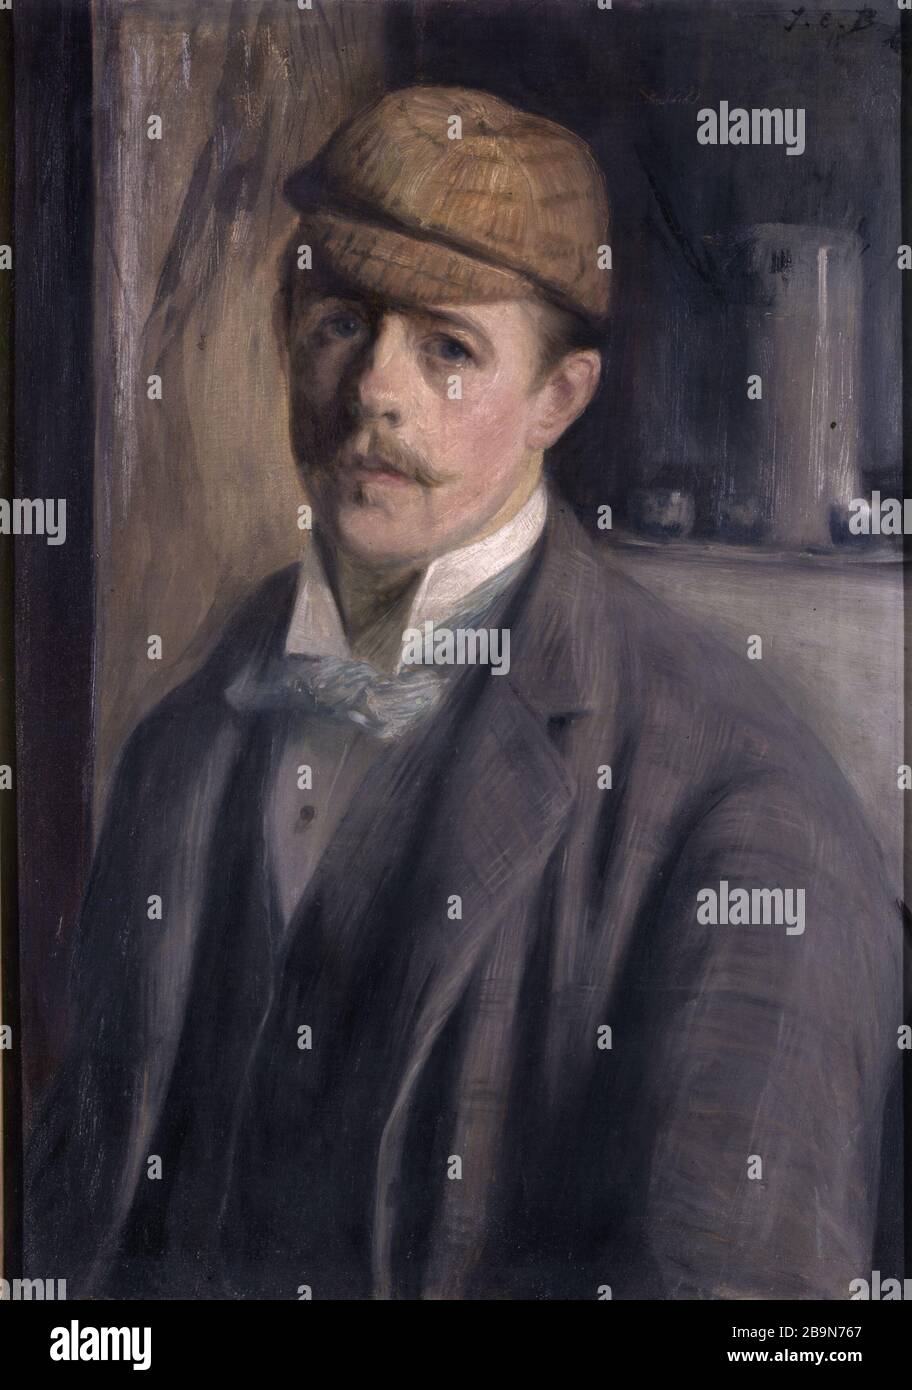 Artist Self-Portrait with cap Jacques-Emile Blanche (1861-1942).  